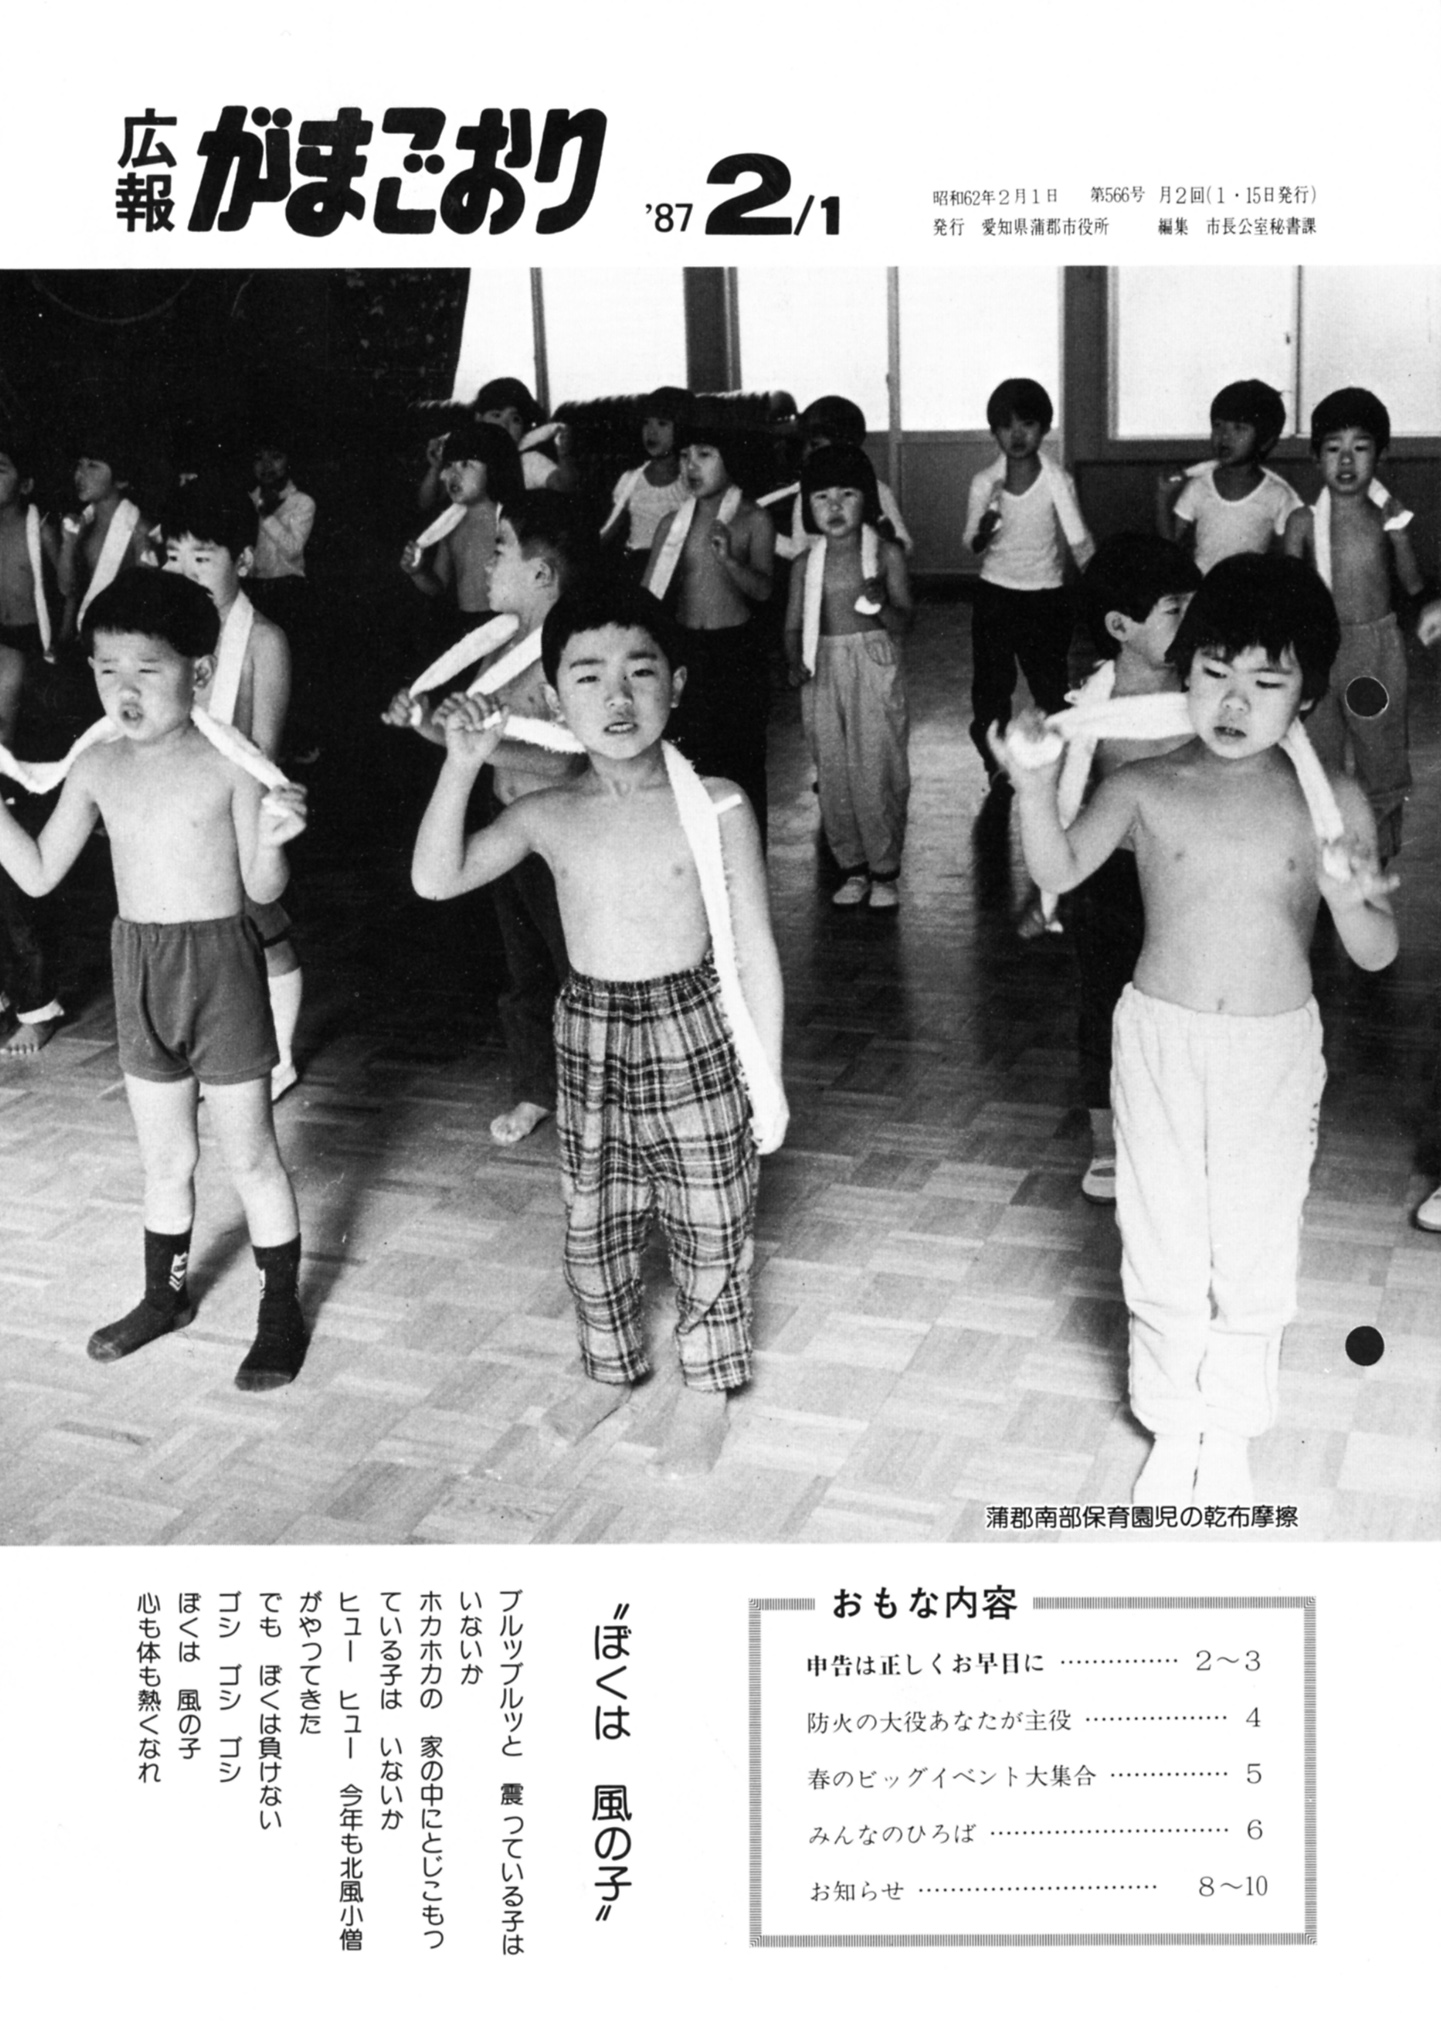 広報がまごおり 昭和62年2月 愛知県蒲郡市公式ホームページ